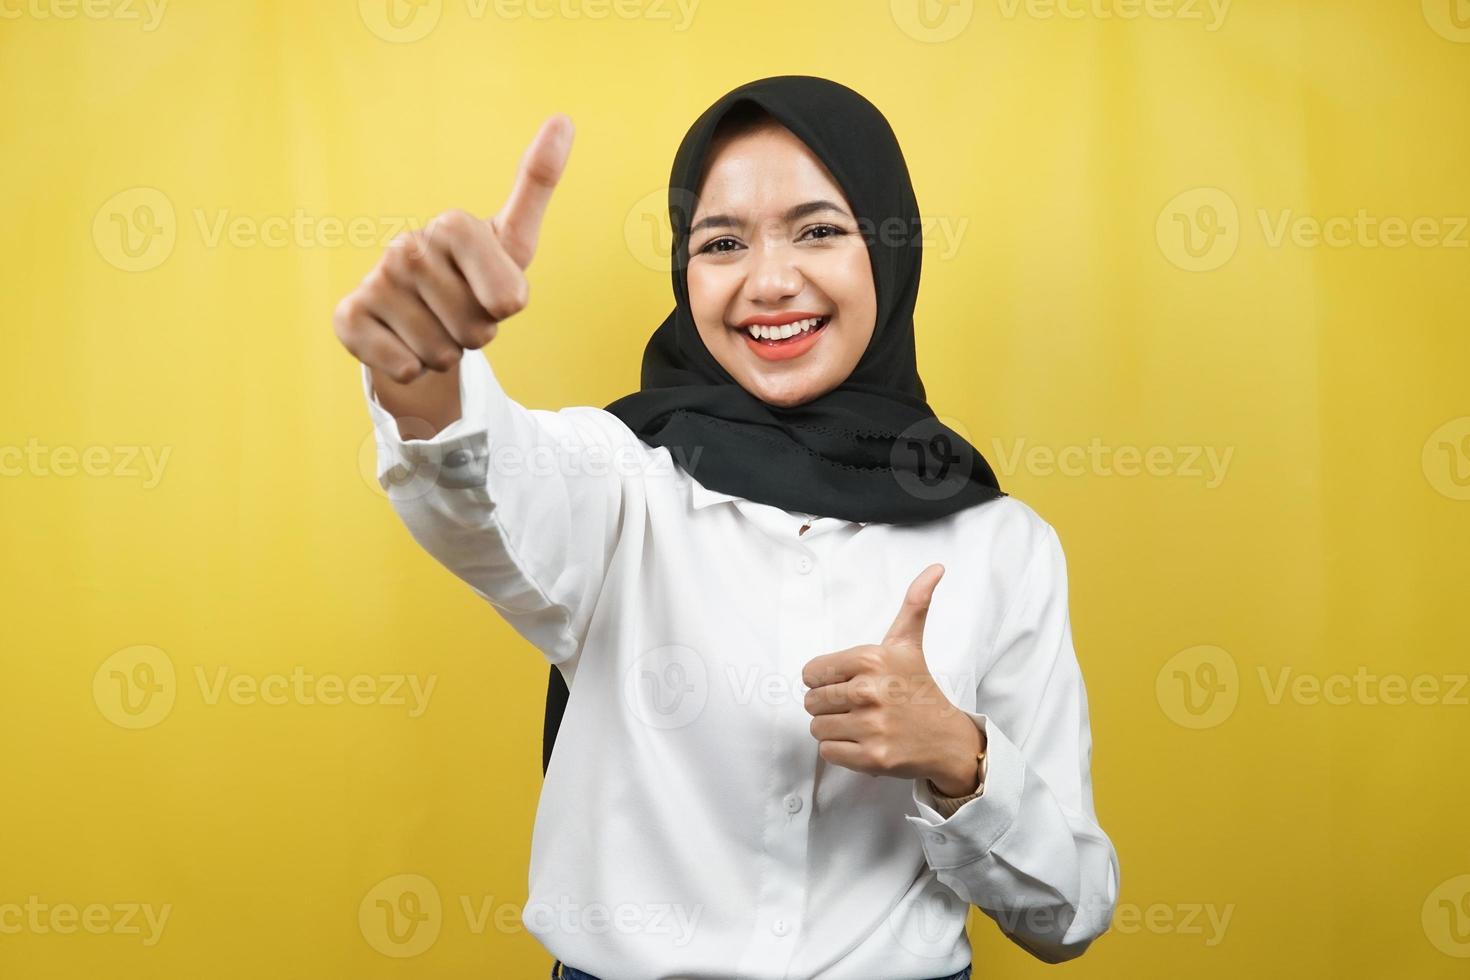 schöne junge asiatische muslimische frau, die selbstbewusst, enthusiastisch und fröhlich lächelt, mit den händen daumen hoch, ok-zeichen, erfolg, gute arbeit, erfolgszeichen, einzeln auf gelbem hintergrund foto